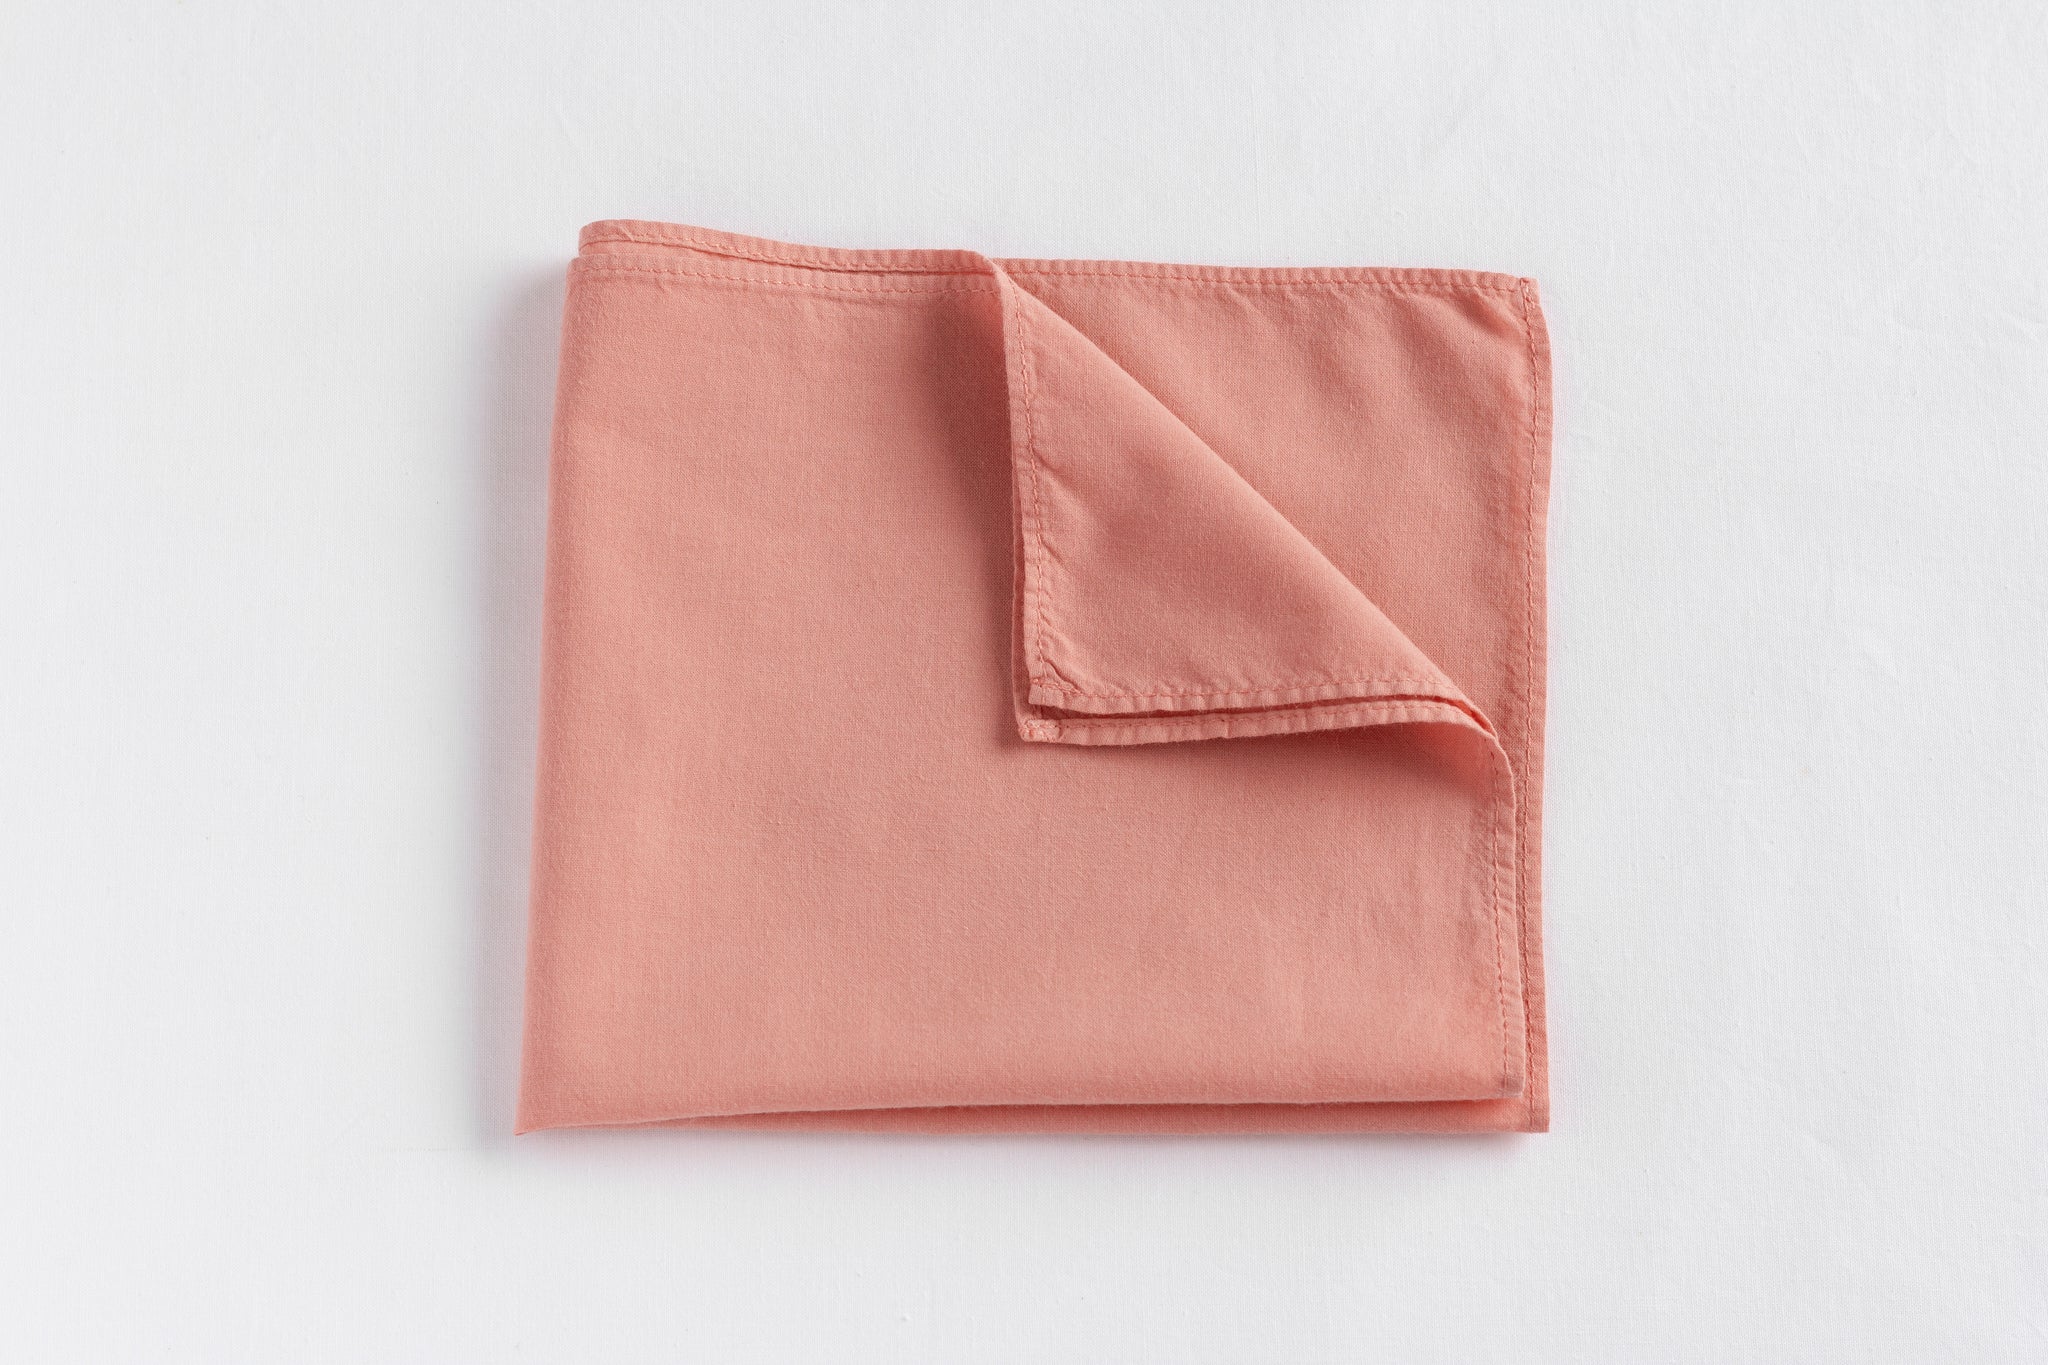 Mouchoir en tissu rose, coton bio. Mouchoir français. 